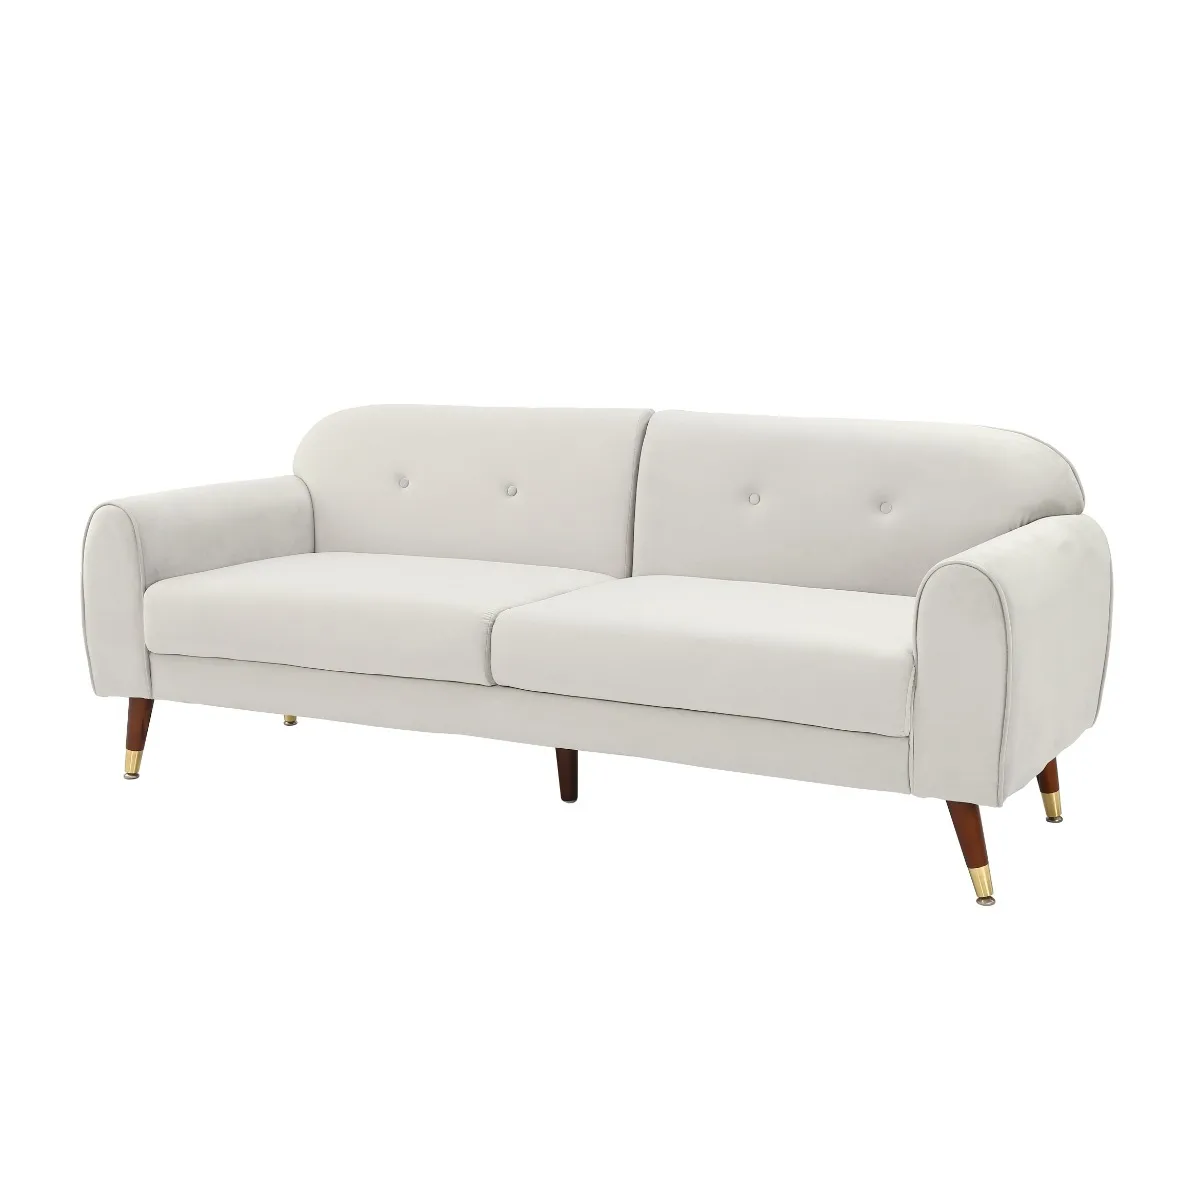 75.5”Mid-century Velvet Sofa,Morden Upholstery 2-seater Velvet Sofa with Armrest for Livingroom(Beige) 4